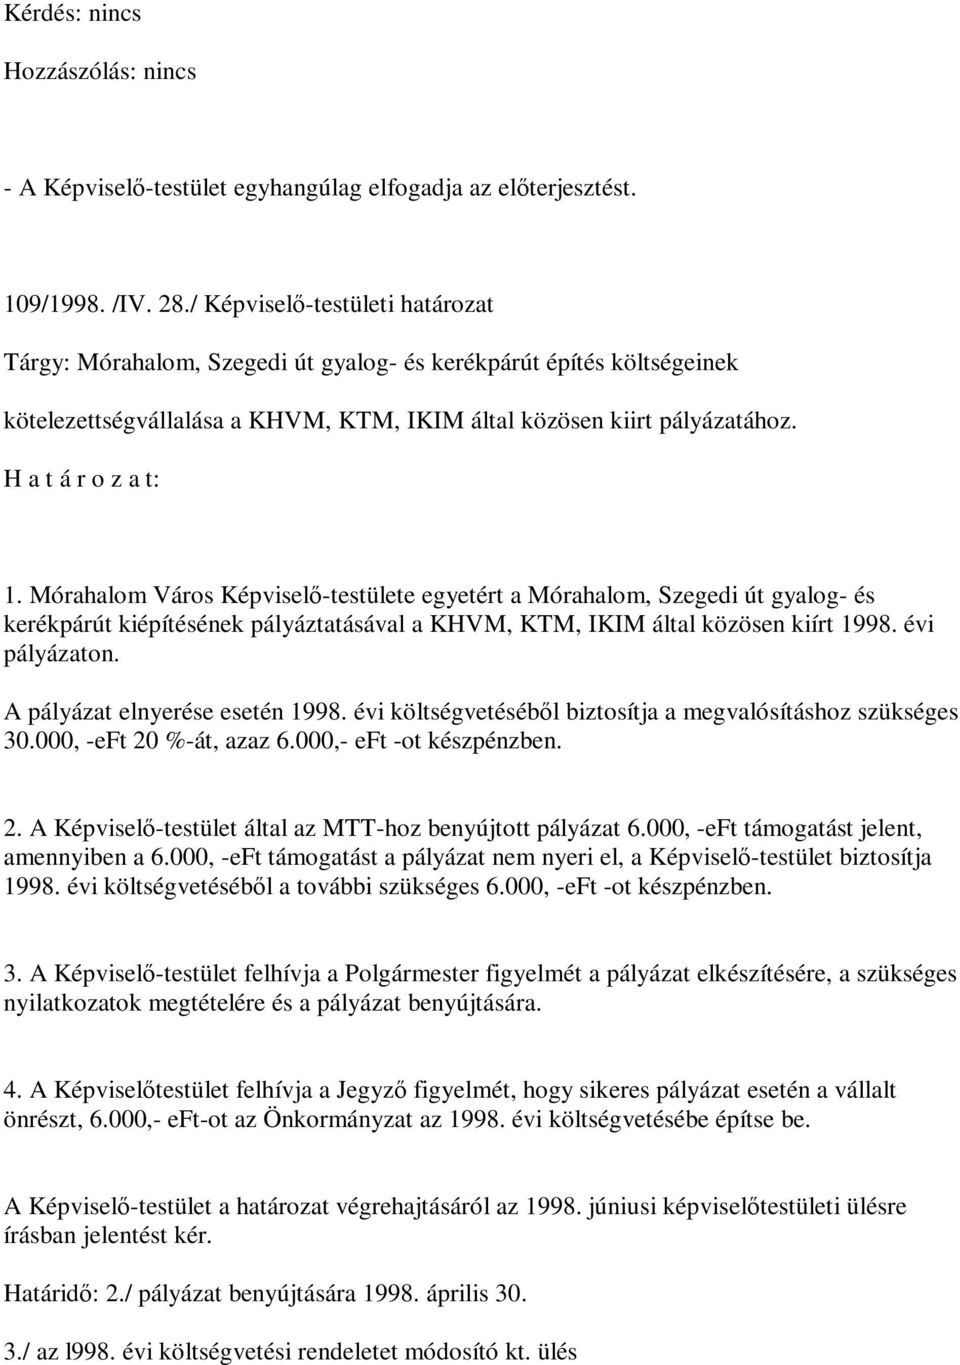 Mórahalom Város Képviselő-testülete egyetért a Mórahalom, Szegedi út gyalog- és kerékpárút kiépítésének pályáztatásával a KHVM, KTM, IKIM által közösen kiírt 1998. évi pályázaton.